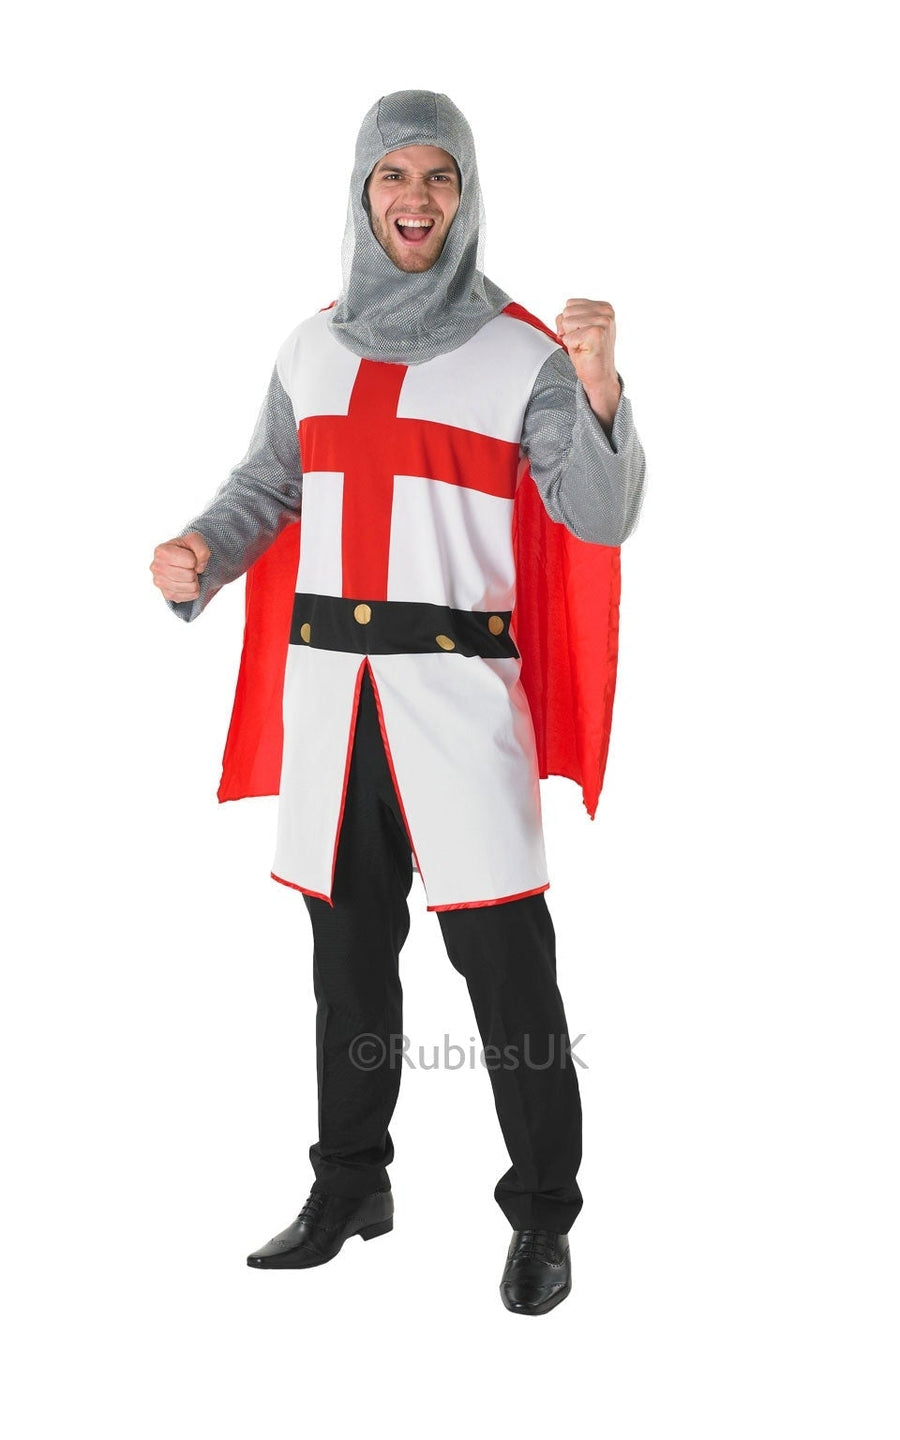 Adult St George Knight Costume_1